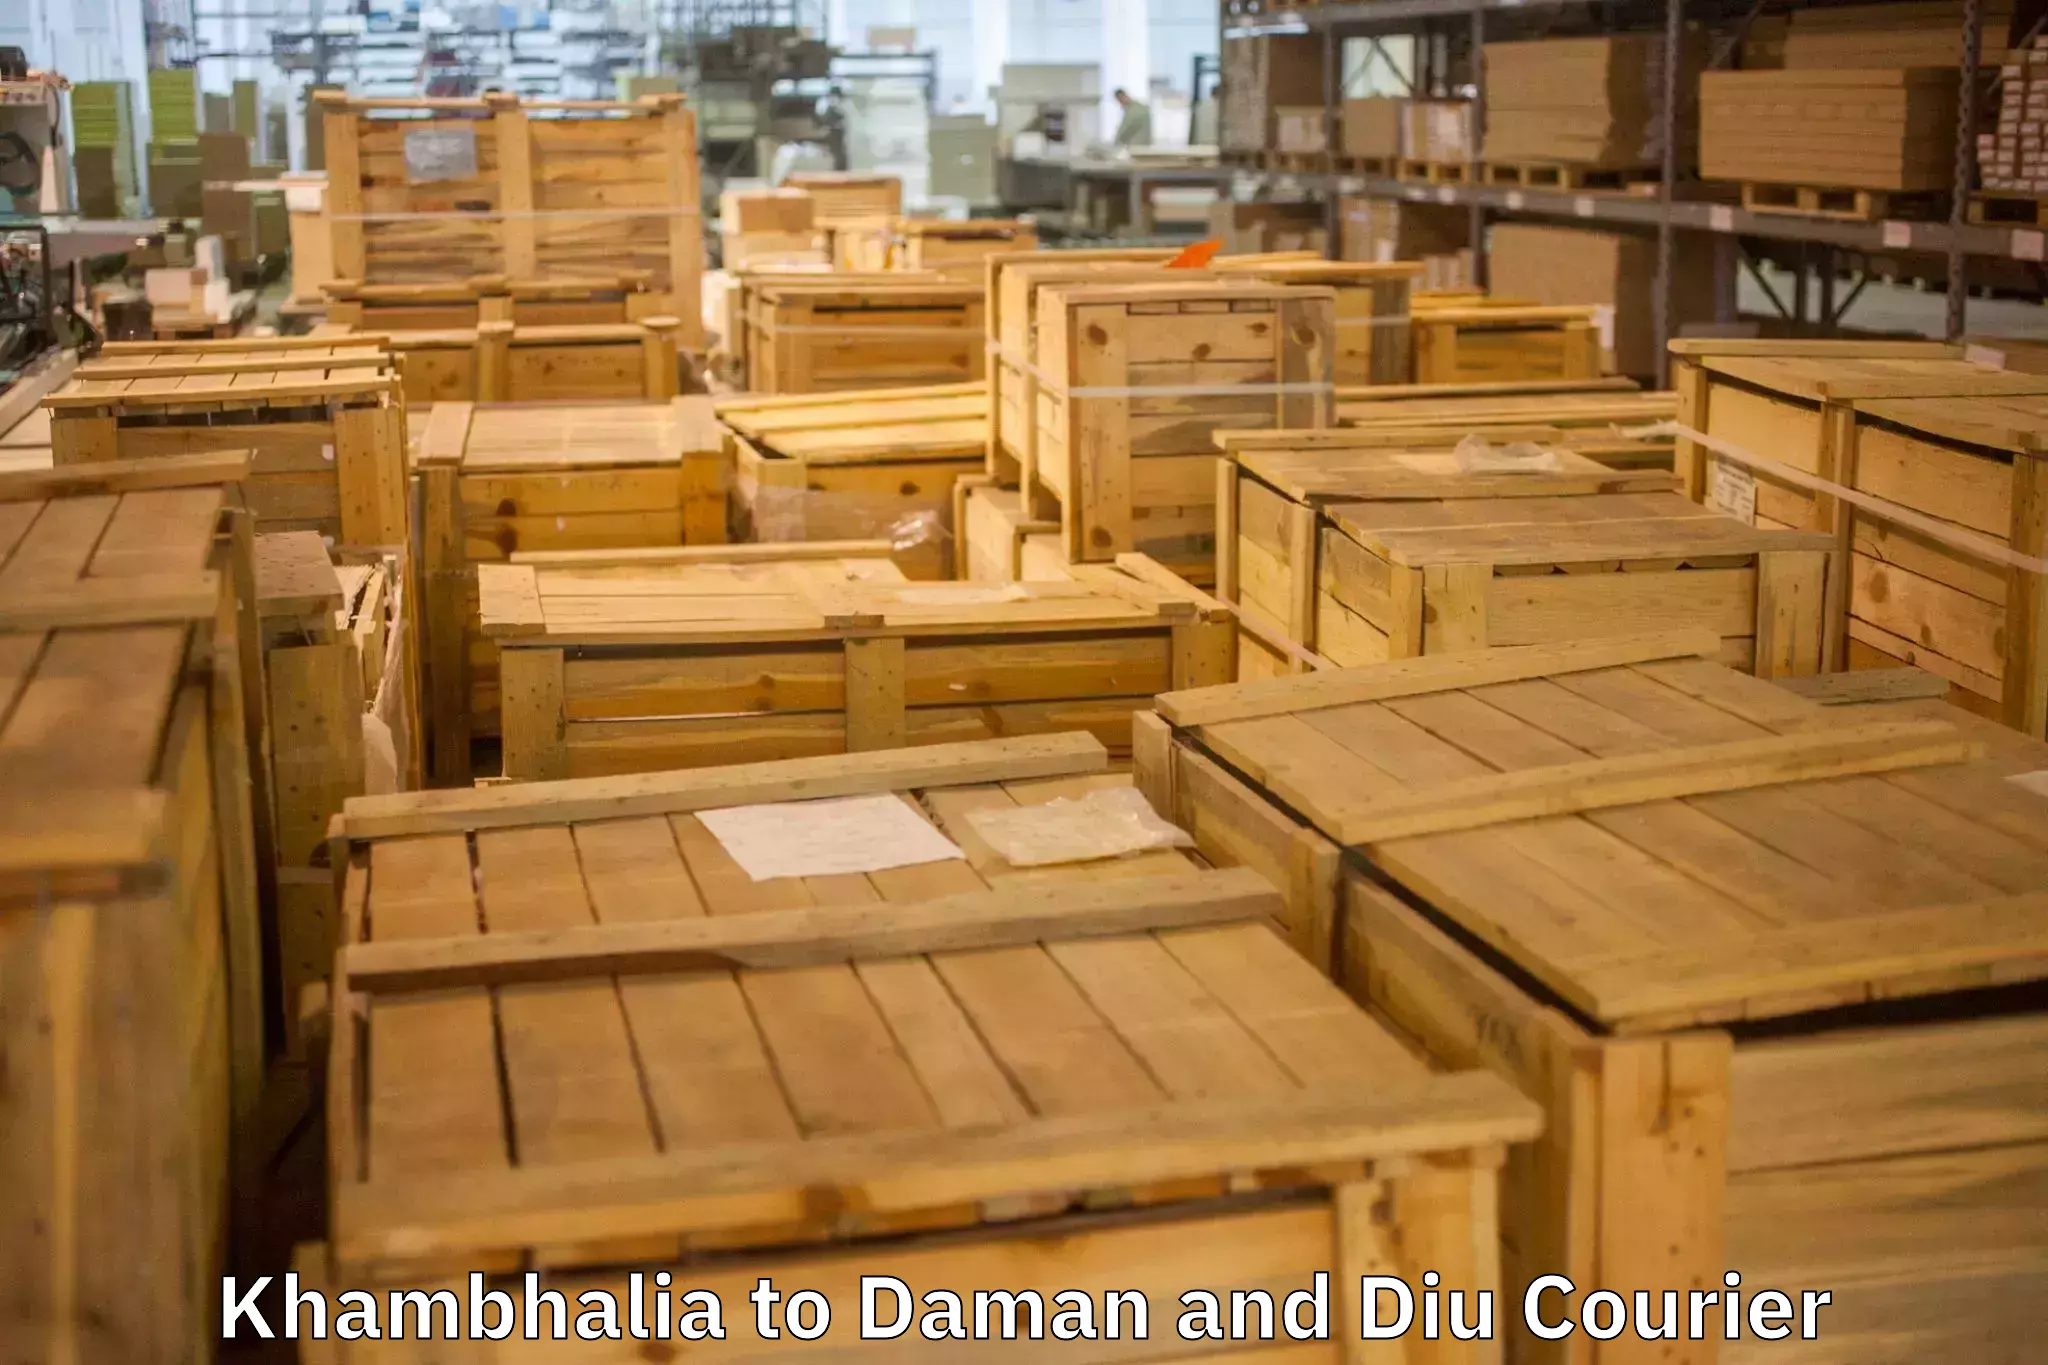 Professional moving assistance Khambhalia to Daman